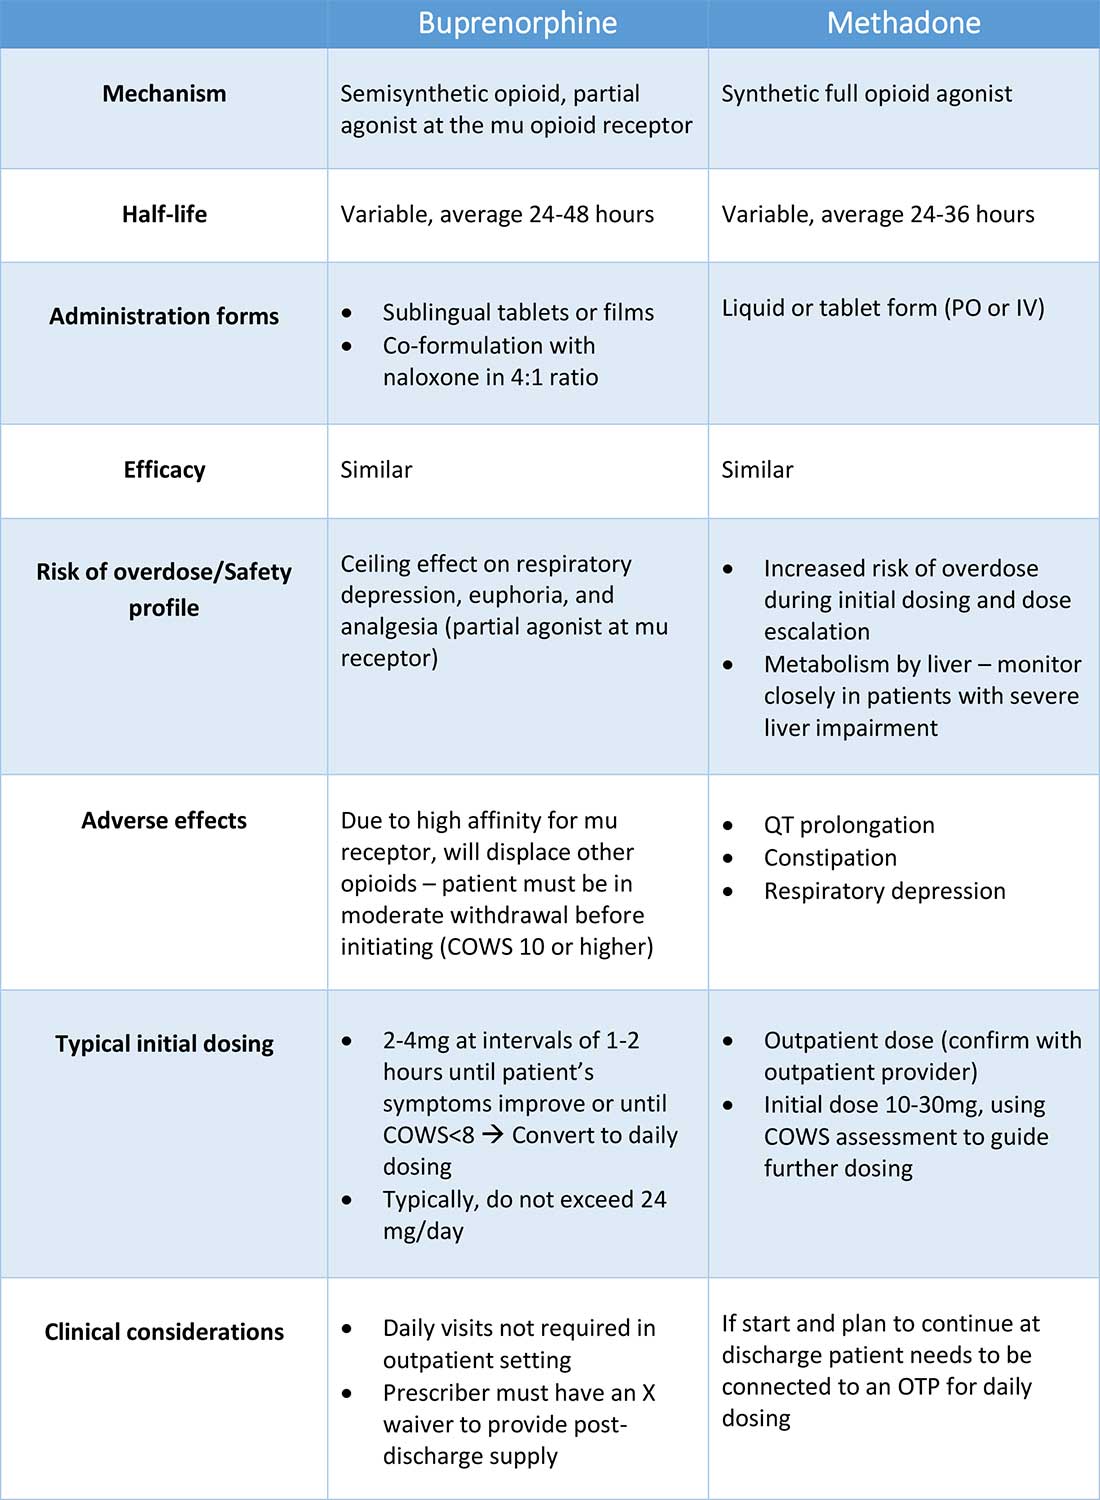 Comparison of buprenorphine and methadone